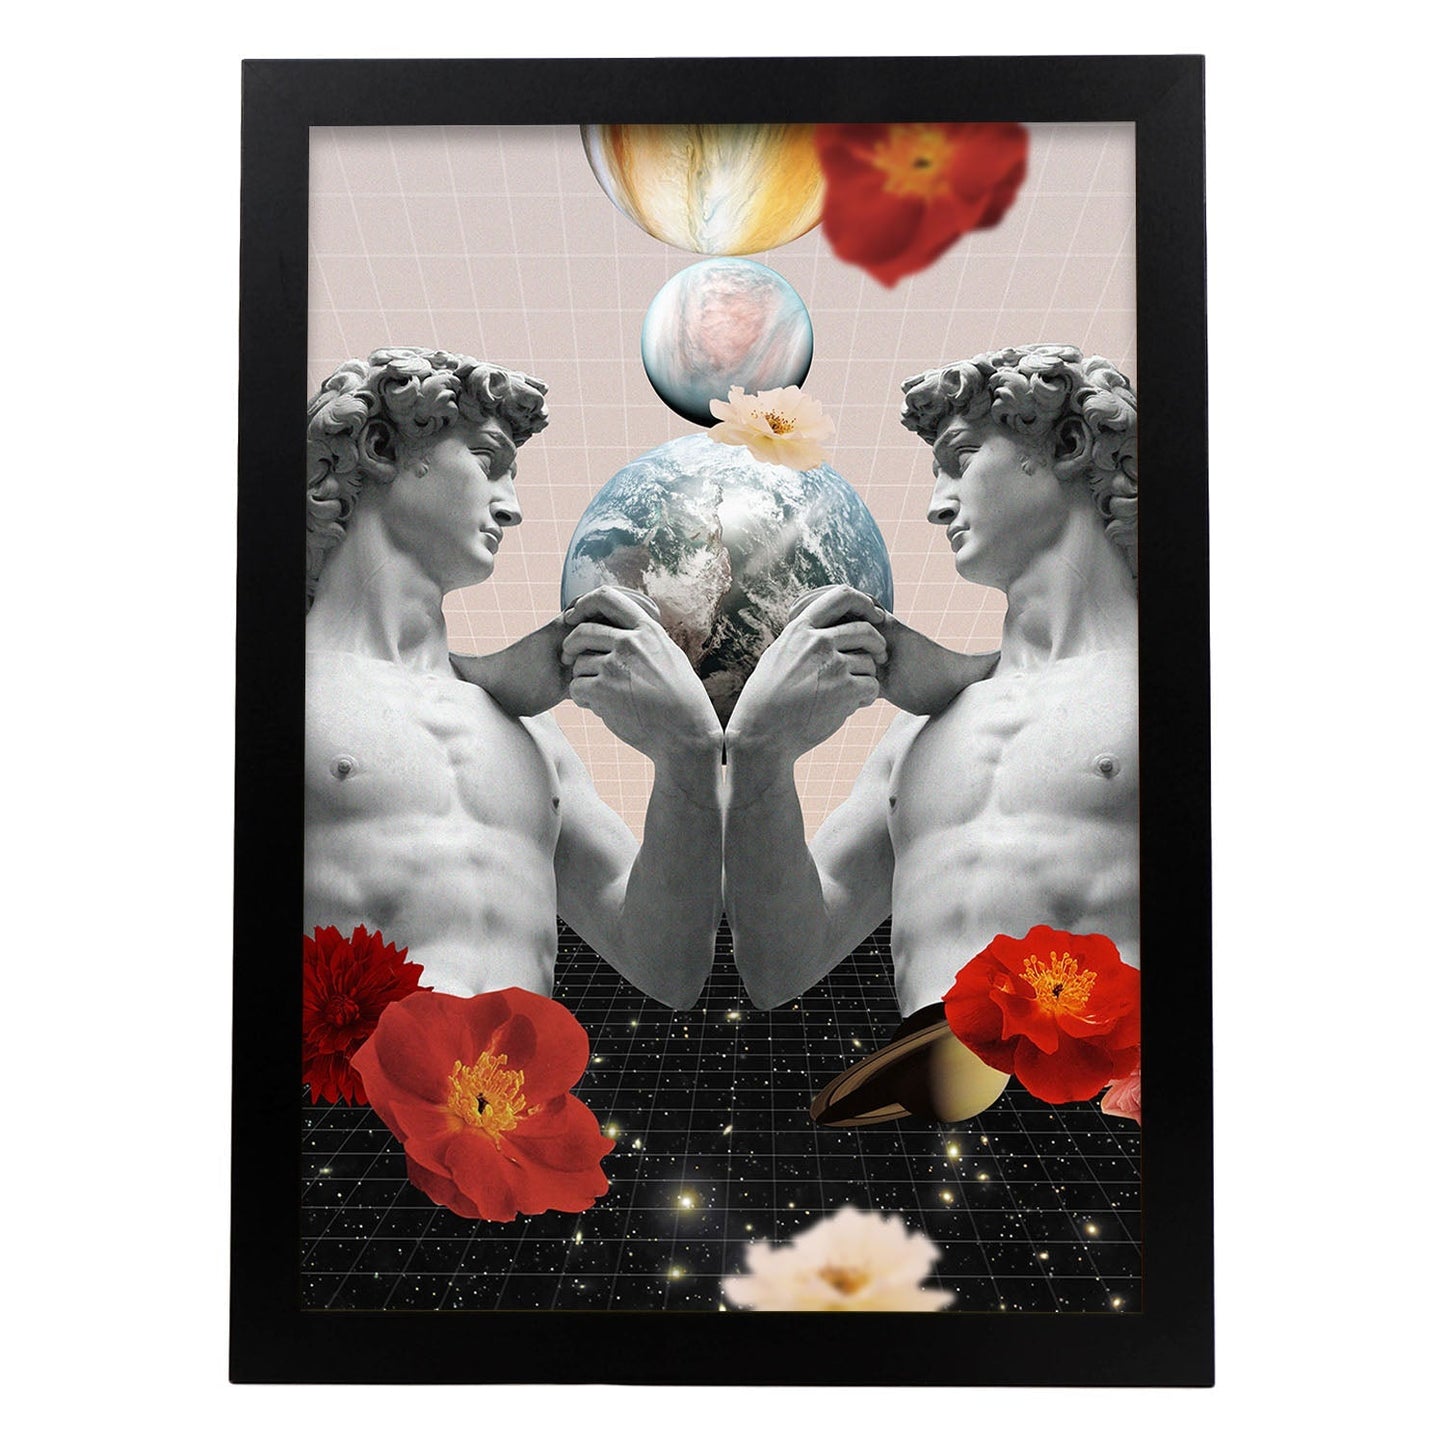 Lamina artistica decorativa con ilustración de Collage surrealista 50 estilo Collage-Artwork-Nacnic-A4-Marco Negro-Nacnic Estudio SL